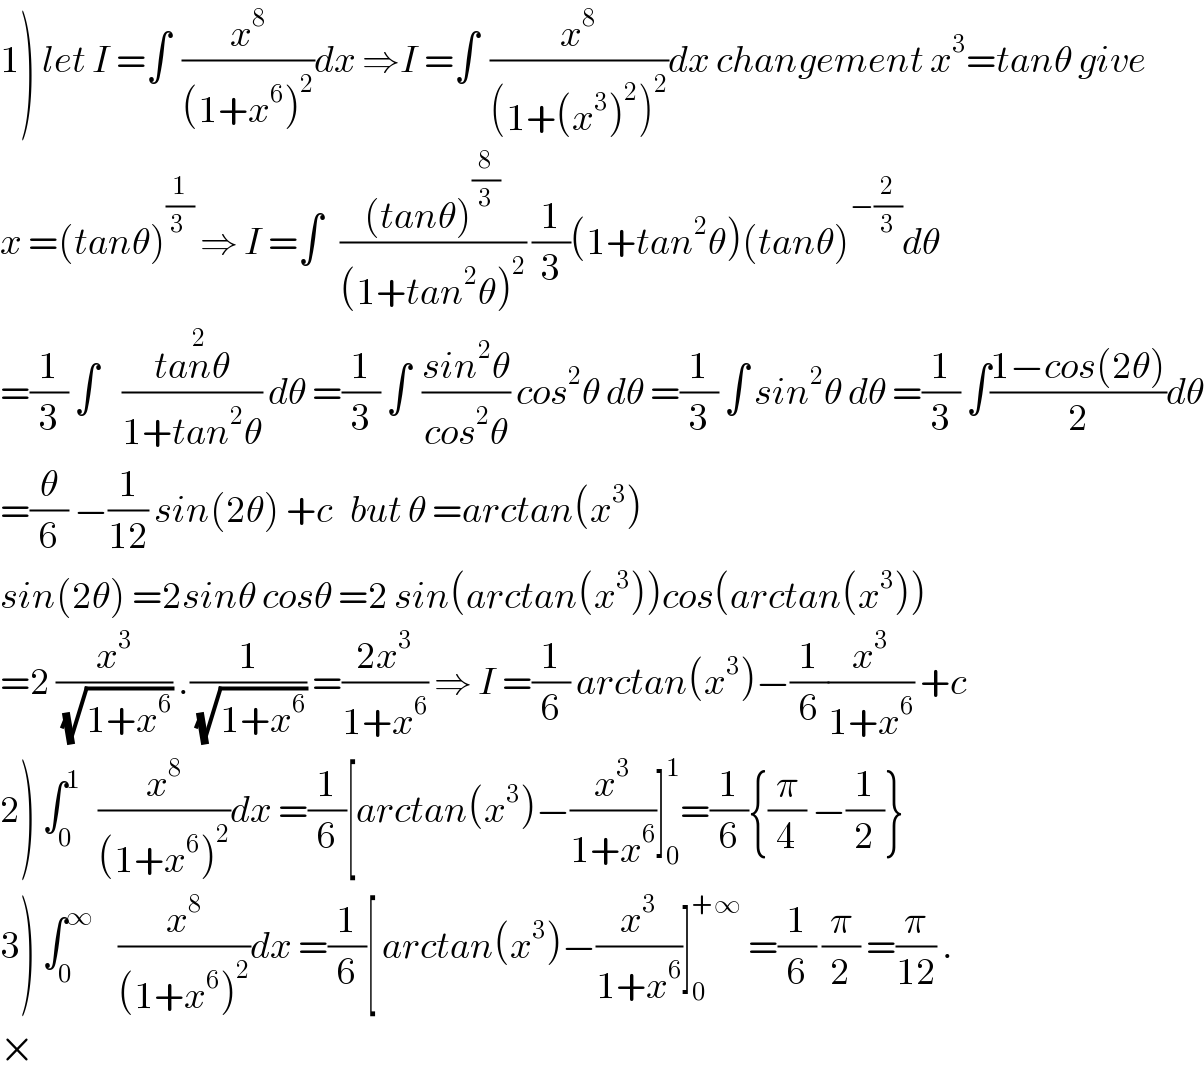 1) let I =∫  (x^8 /((1+x^6 )^2 ))dx ⇒I =∫  (x^8 /((1+(x^3 )^2 )^2 ))dx changement x^3 =tanθ give  x =(tanθ)^(1/(3 ))  ⇒ I =∫   (((tanθ)^(8/3) )/((1+tan^2 θ)^2 )) (1/3)(1+tan^2 θ)(tanθ)^(−(2/3)) dθ  =(1/3) ∫    ((tan^2 θ)/(1+tan^2 θ)) dθ =(1/3) ∫  ((sin^2 θ)/(cos^2 θ)) cos^2 θ dθ =(1/3) ∫ sin^2 θ dθ =(1/3) ∫((1−cos(2θ))/2)dθ  =(θ/6) −(1/(12)) sin(2θ) +c   but θ =arctan(x^3 )  sin(2θ) =2sinθ cosθ =2 sin(arctan(x^3 ))cos(arctan(x^3 ))  =2 (x^3 /(√(1+x^6 ))) .(1/(√(1+x^6 ))) =((2x^3 )/(1+x^6 )) ⇒ I =(1/6) arctan(x^3 )−(1/6)(x^3 /(1+x^6 )) +c  2) ∫_0 ^1    (x^8 /((1+x^6 )^2 ))dx =(1/6)[arctan(x^3 )−(x^3 /(1+x^6 ))]_0 ^1 =(1/6){(π/4) −(1/2)}  3) ∫_0 ^∞     (x^8 /((1+x^6 )^2 ))dx =(1/6)[ arctan(x^3 )−(x^3 /(1+x^6 ))]_0 ^(+∞)  =(1/6) (π/2) =(π/(12)) .  ×  